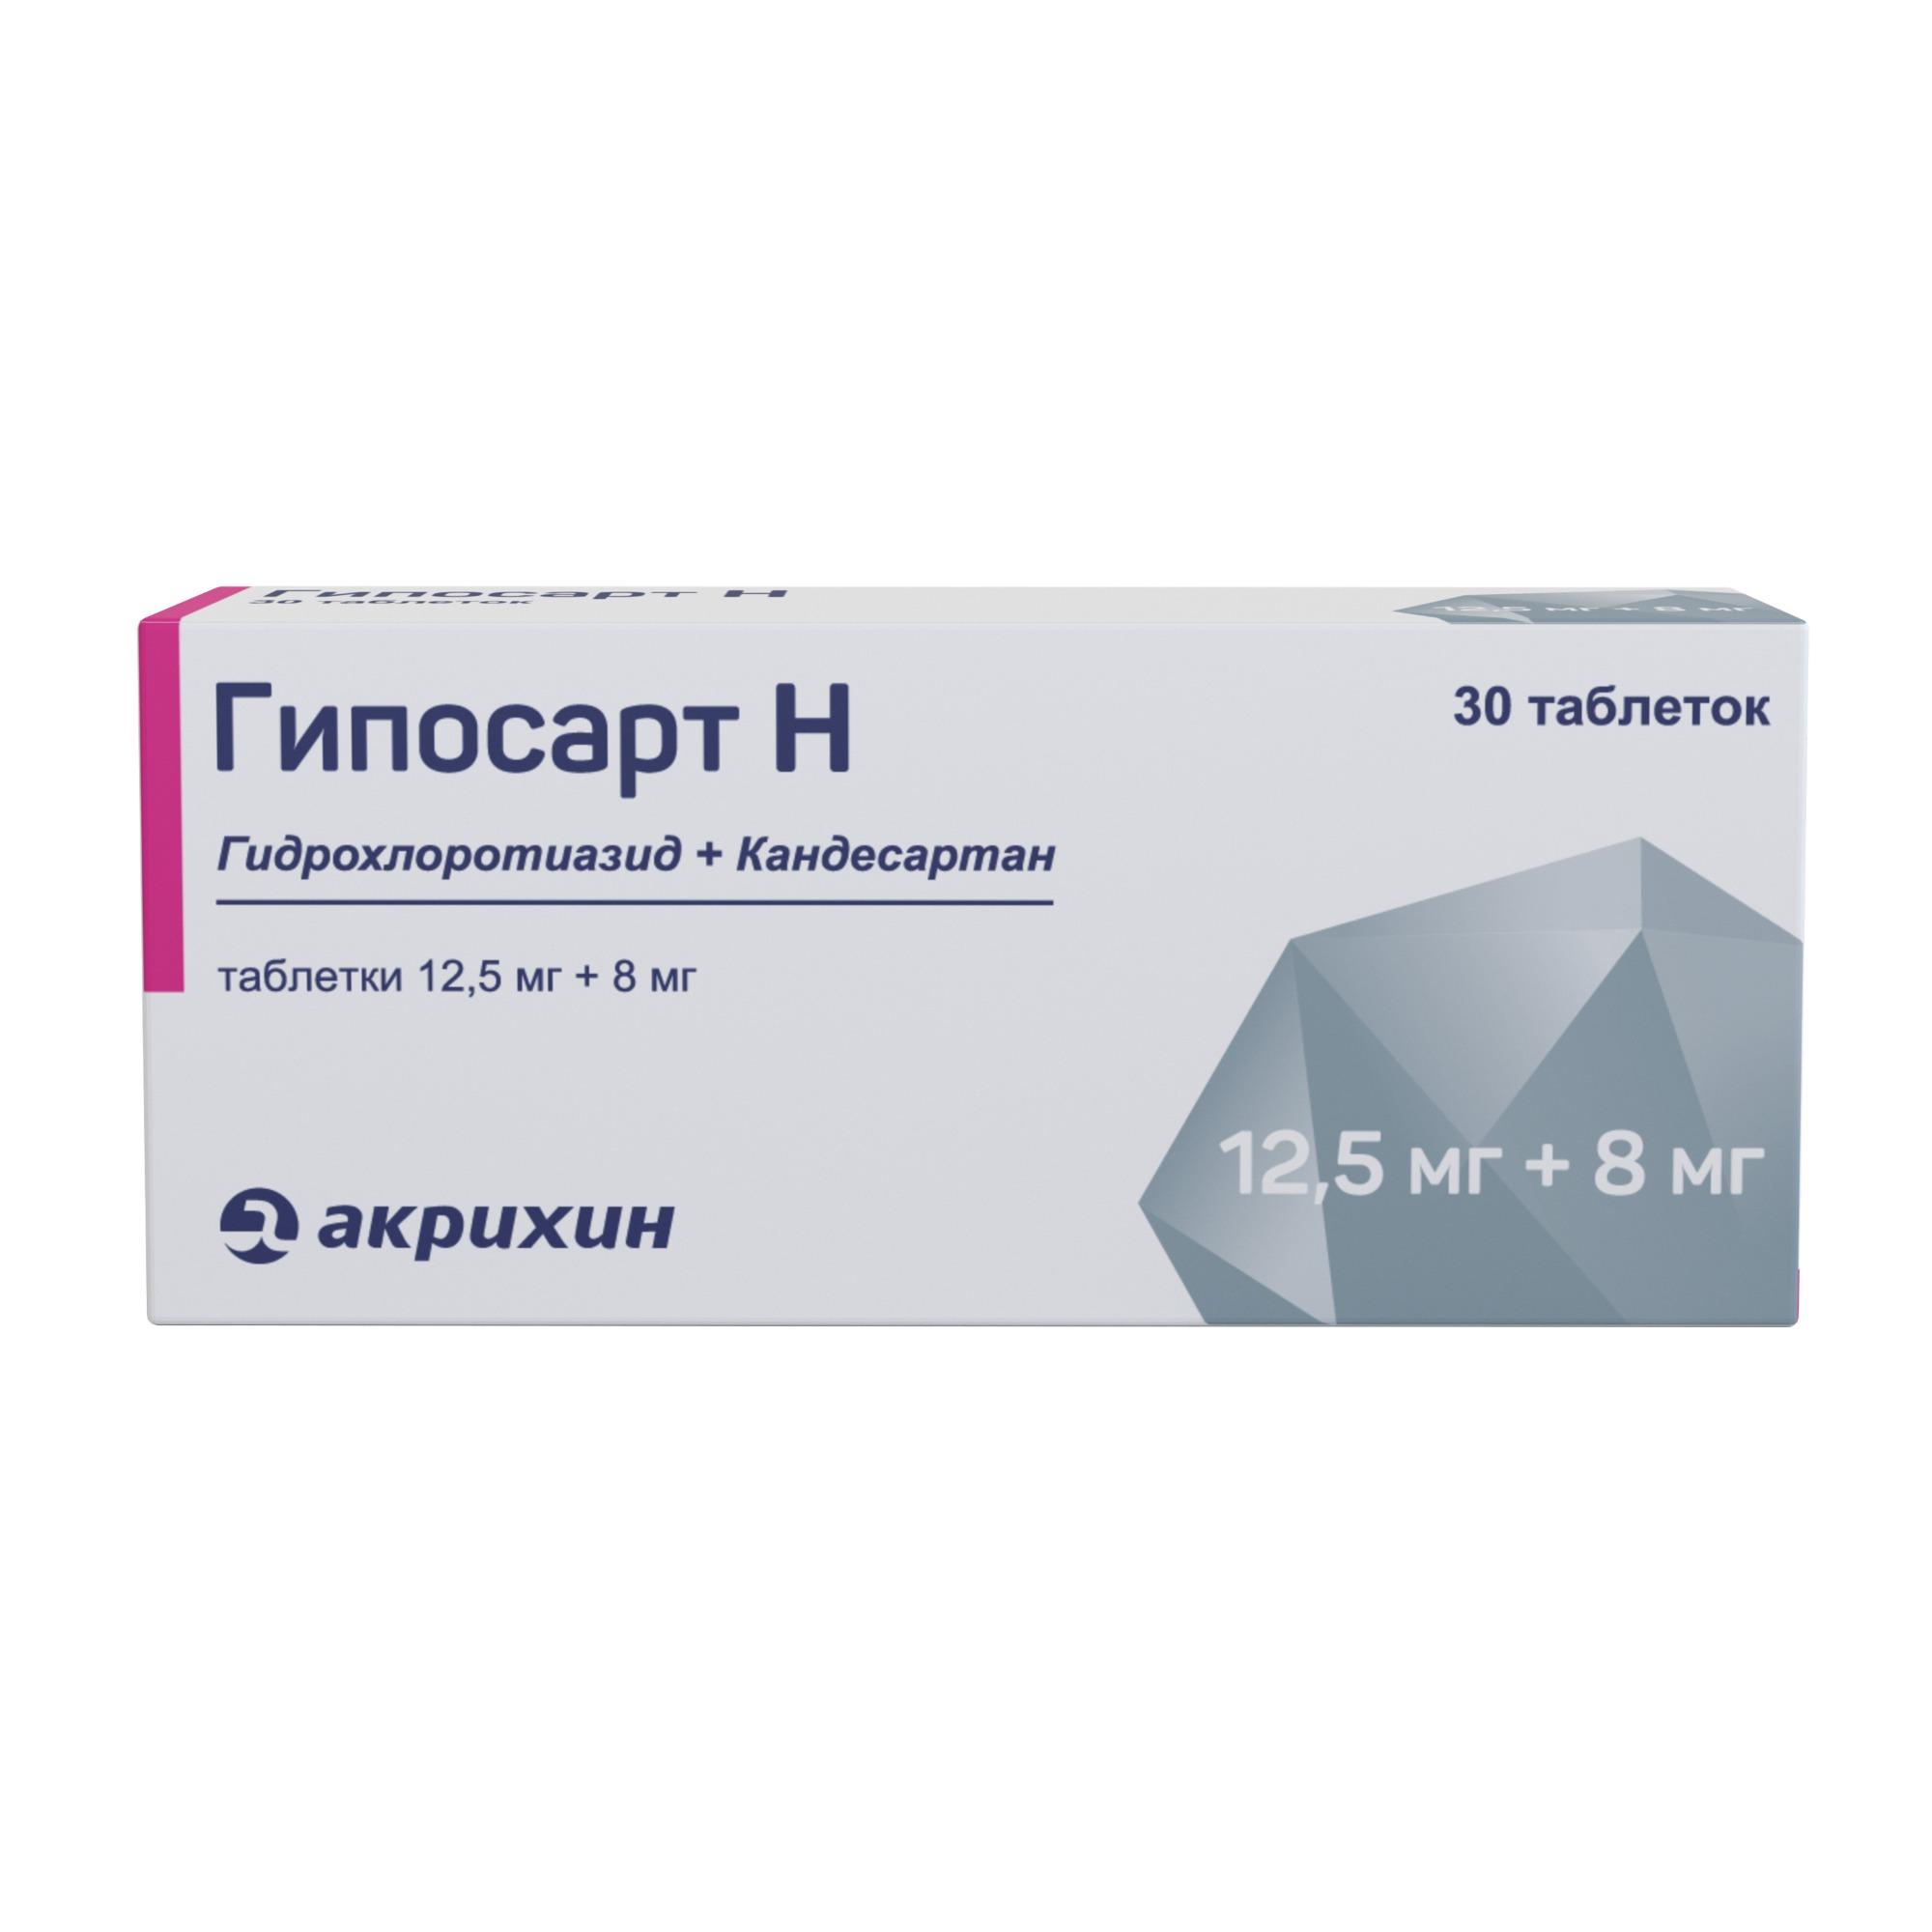 Гипосарт н. Гипосарт таблетки 8 мг 28 шт.. Пентанов-н таблетки. Гипосарт 4. 30 H таблетки.